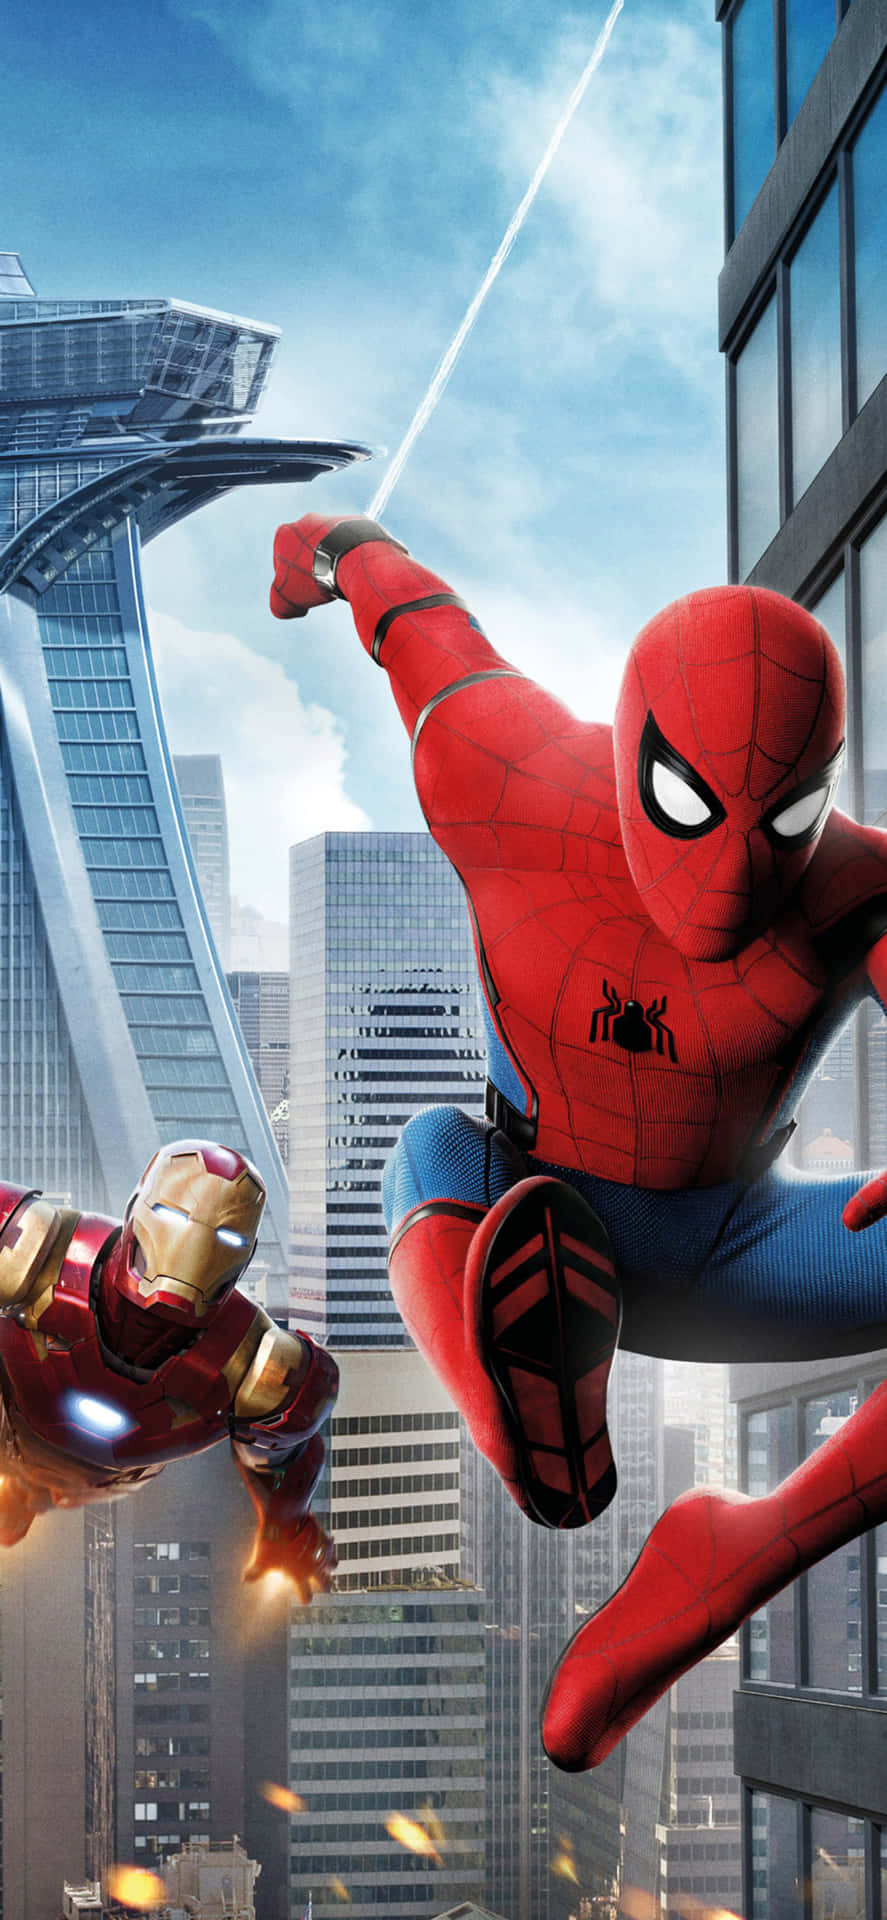 Spider-Man og Iron Man samler kræfter til kamp Wallpaper